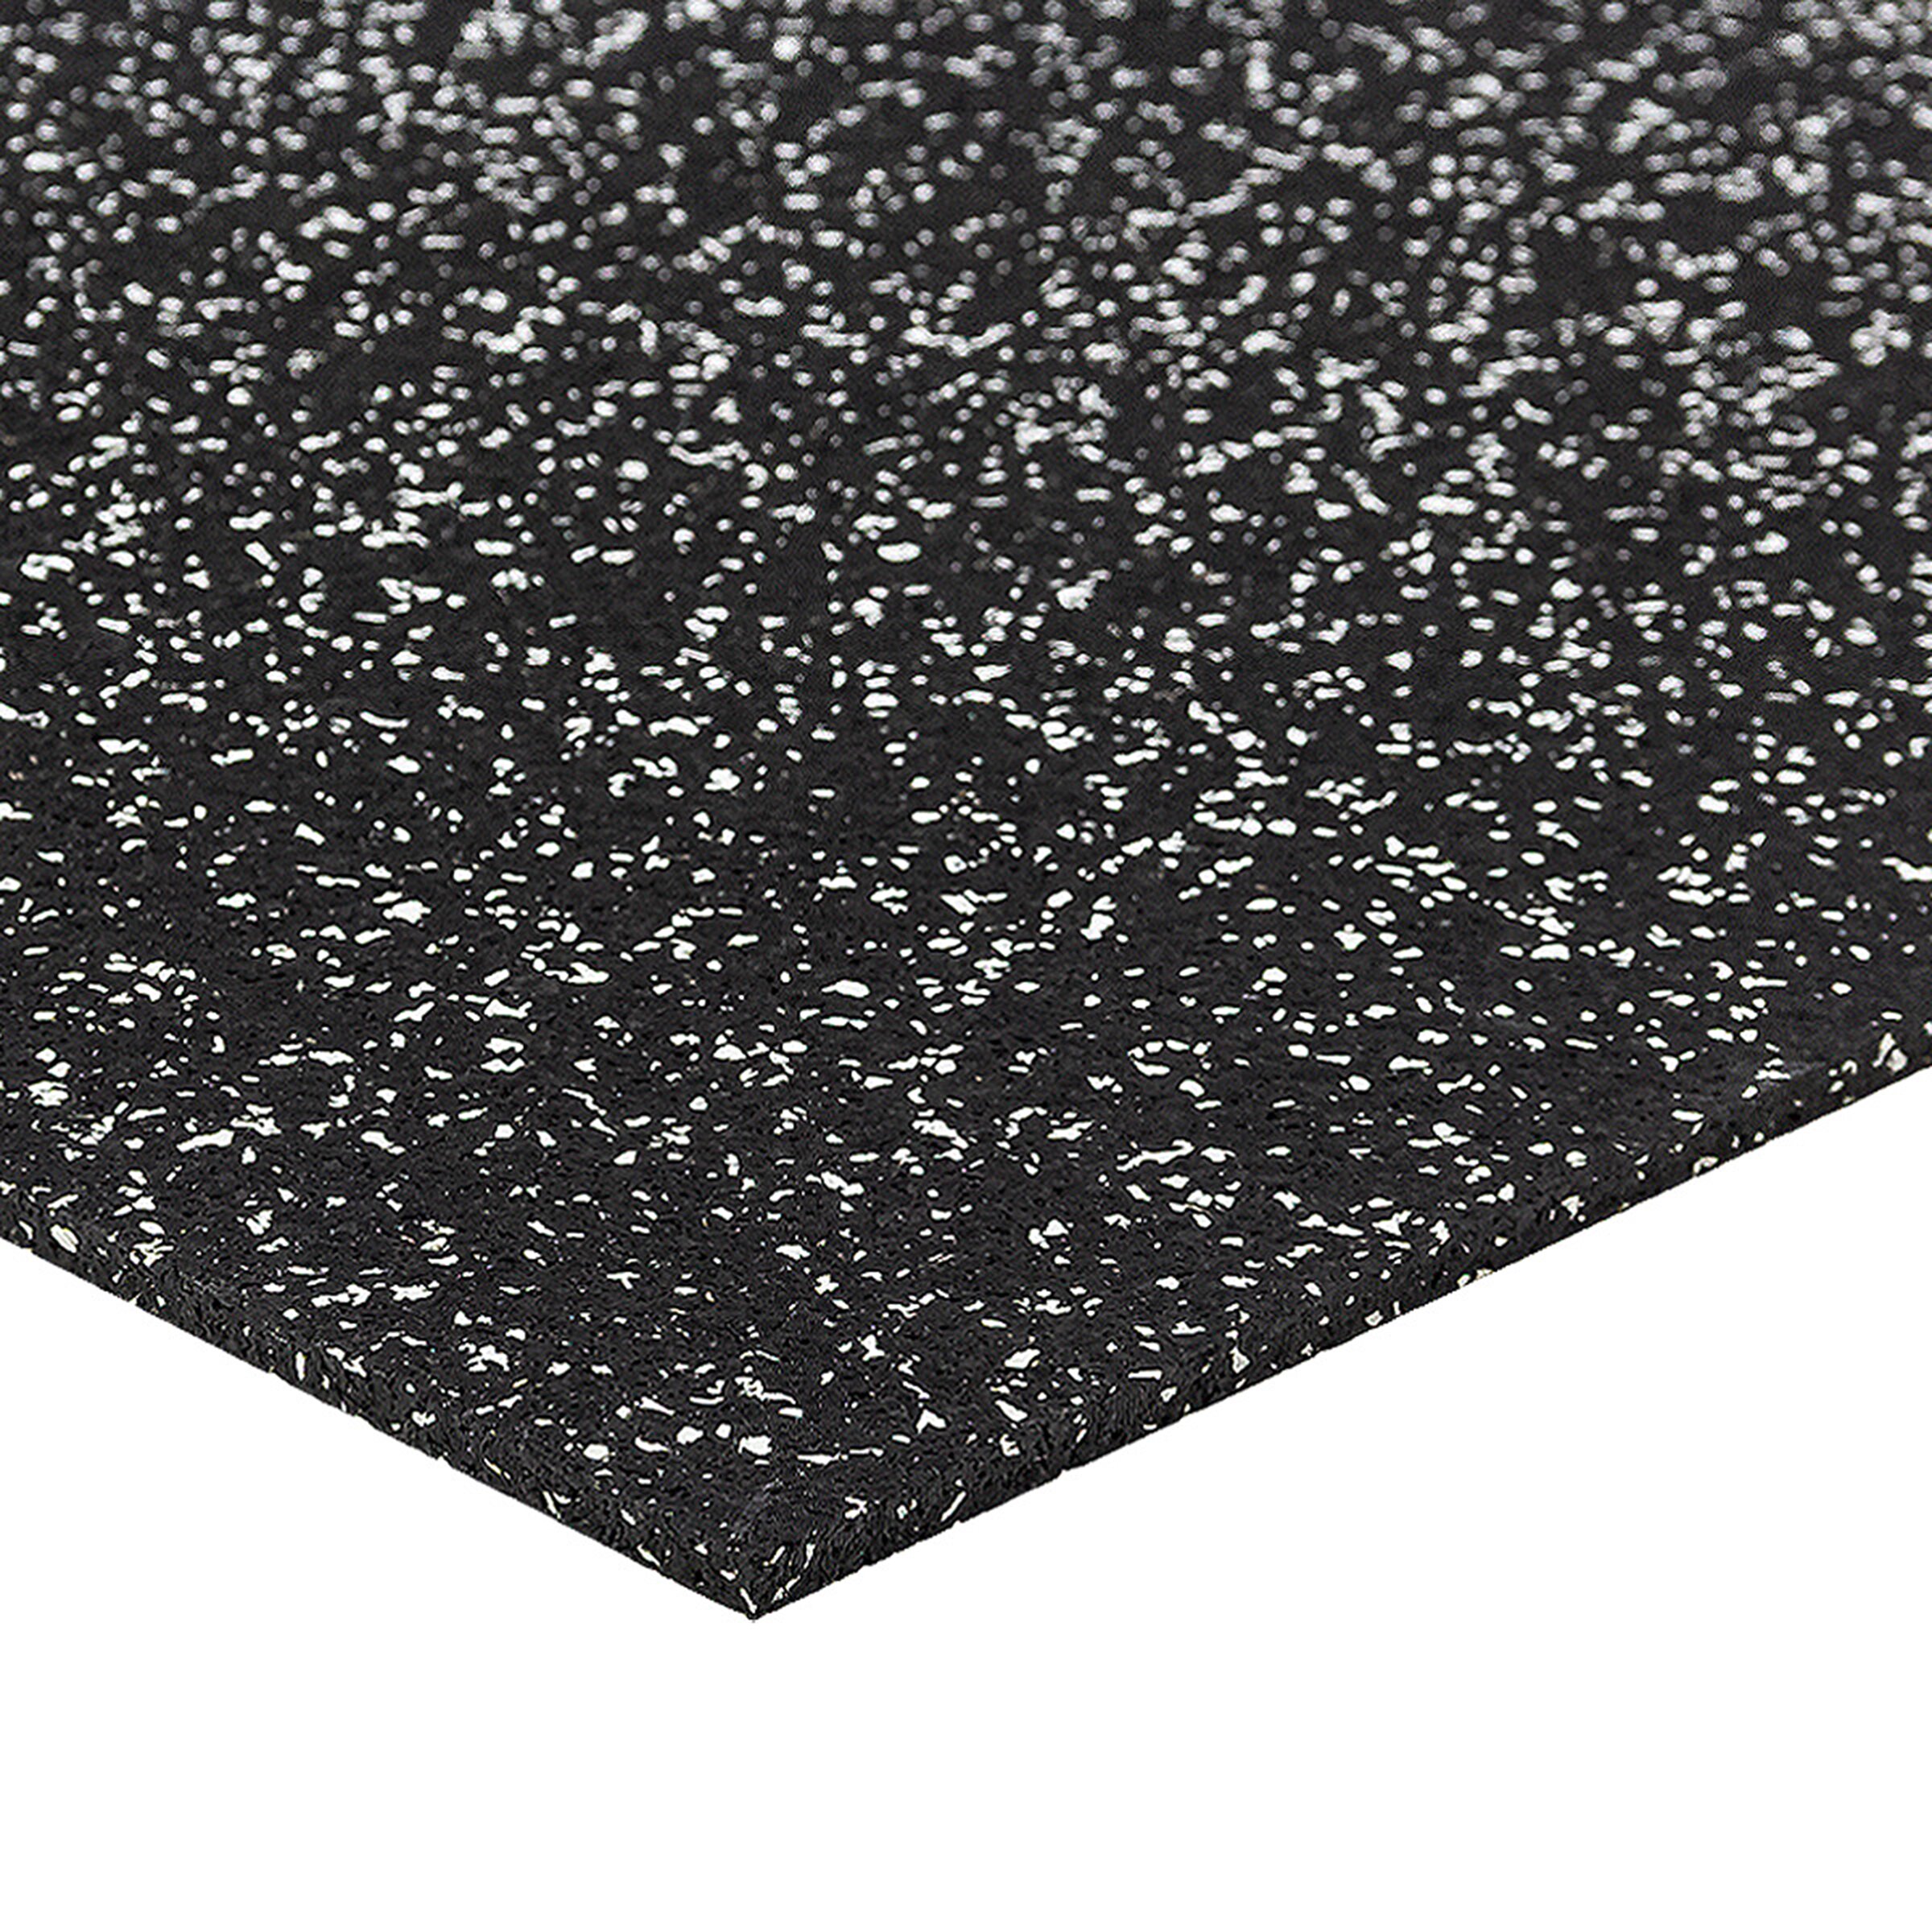 Černo-bílá gumová modulová puzzle dlažba FLOMA FitFlo SF1050 - délka 50 cm, šířka 50 cm, výška 0,8 cm